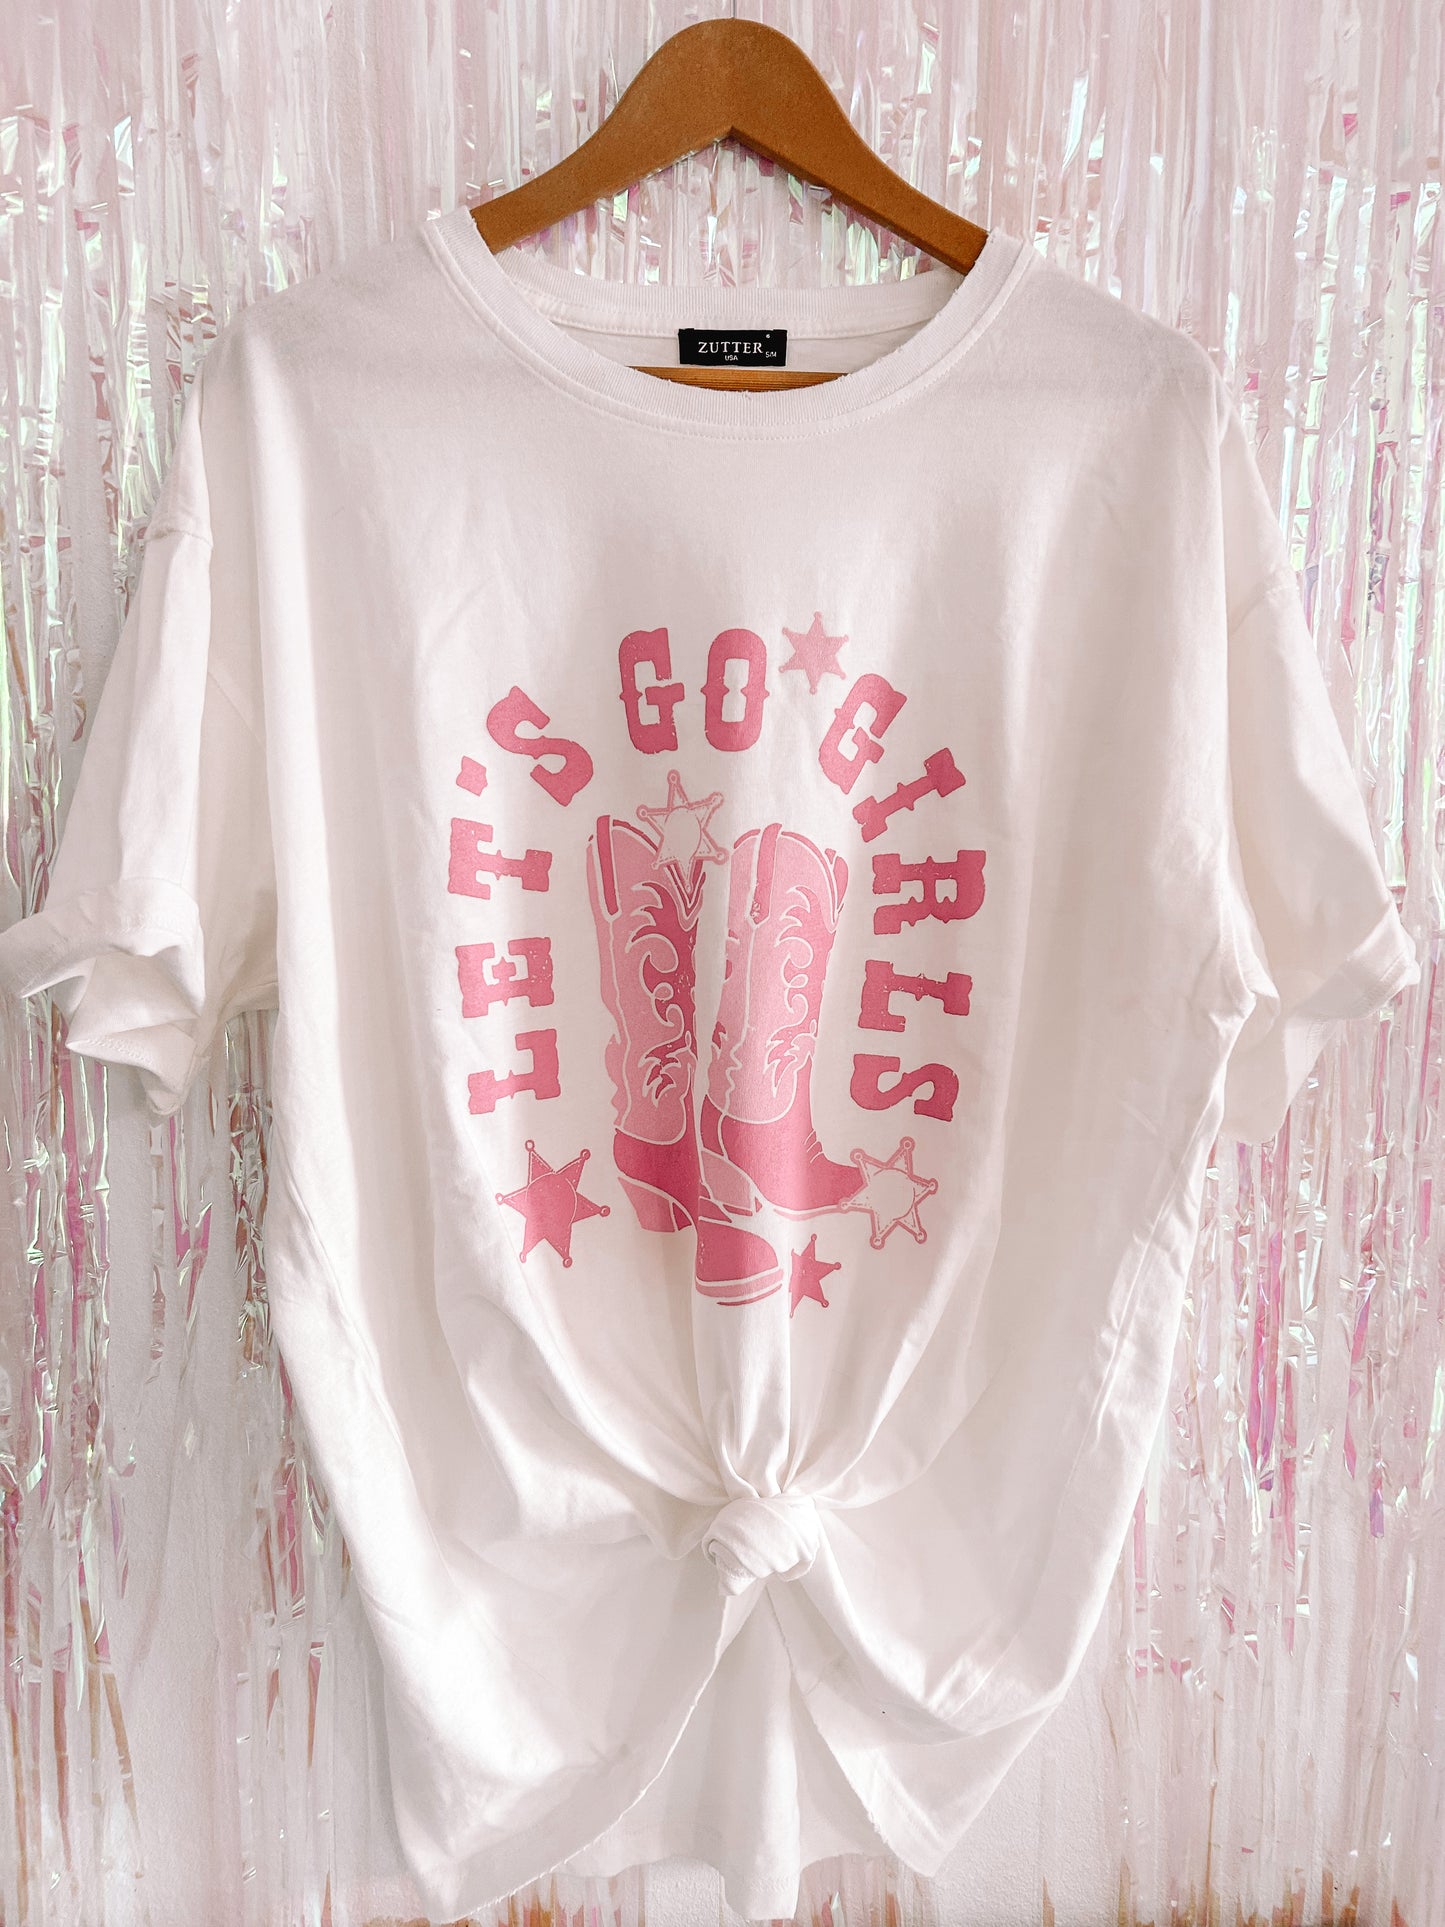 Let’s Go Girls Tshirt - Zutter